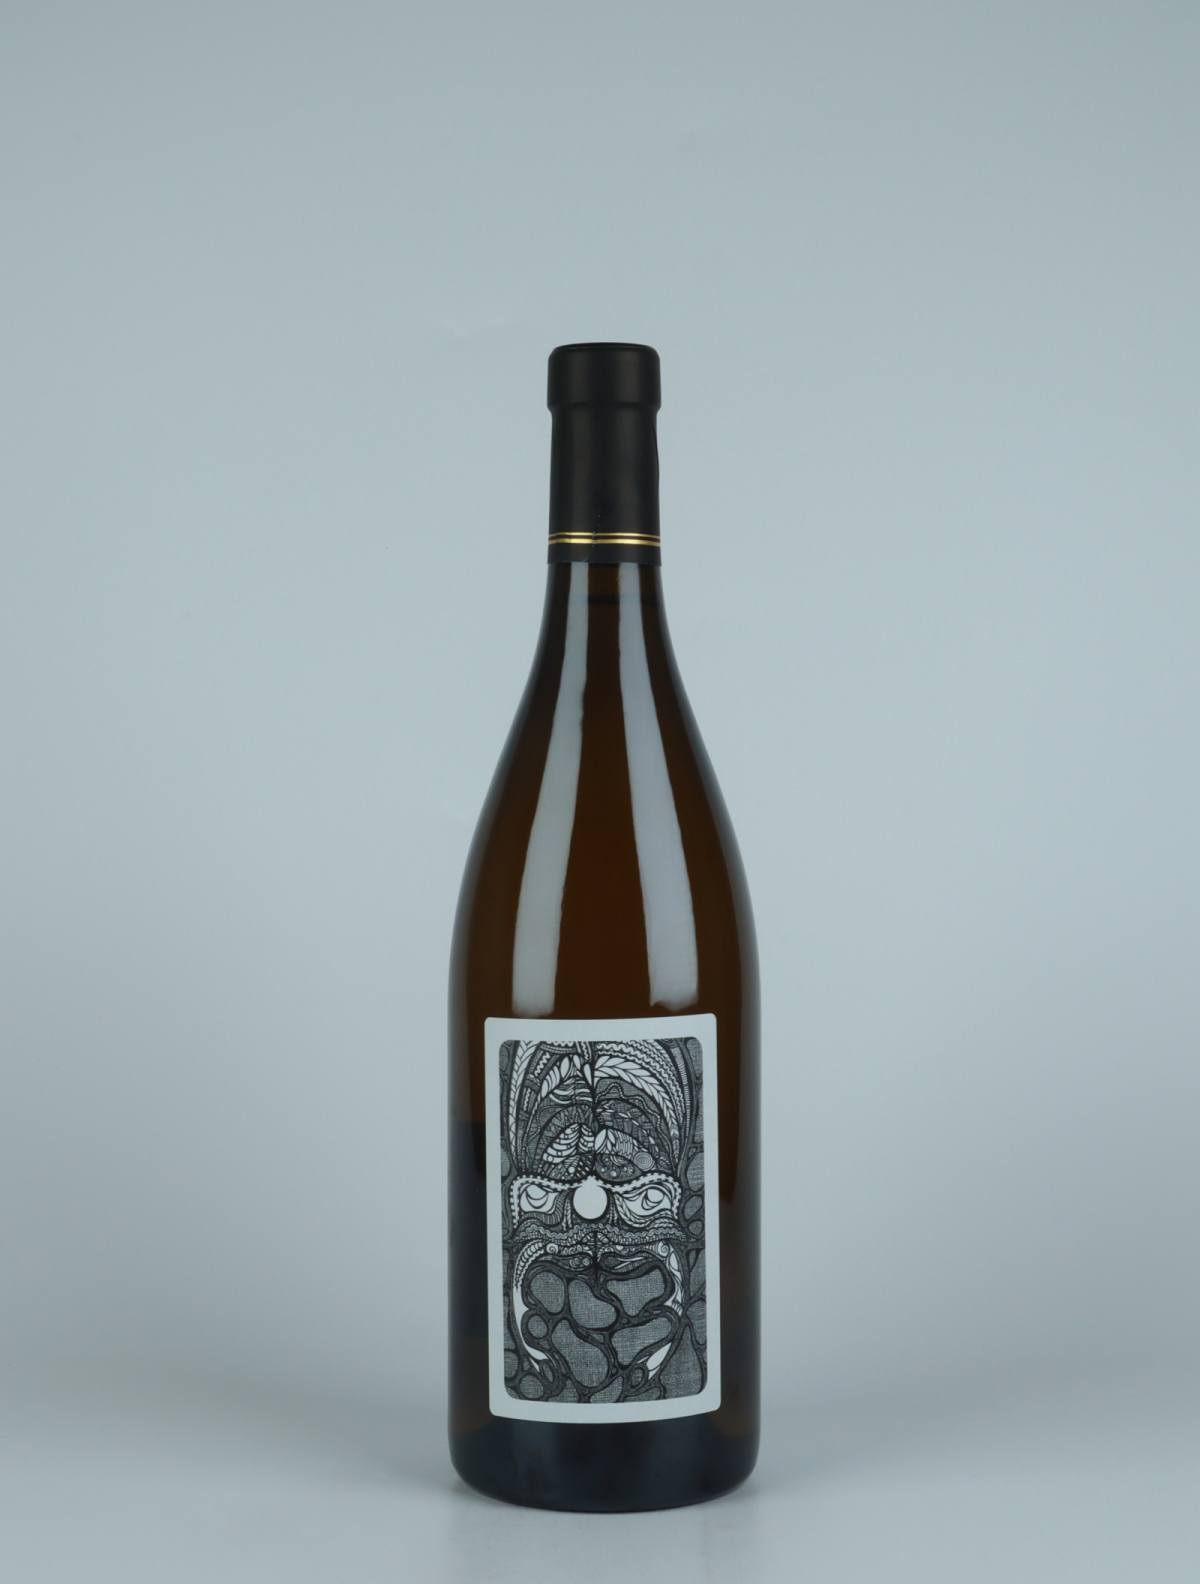 A bottle 2020 Autochtone White wine from Julien Courtois, Loire in France